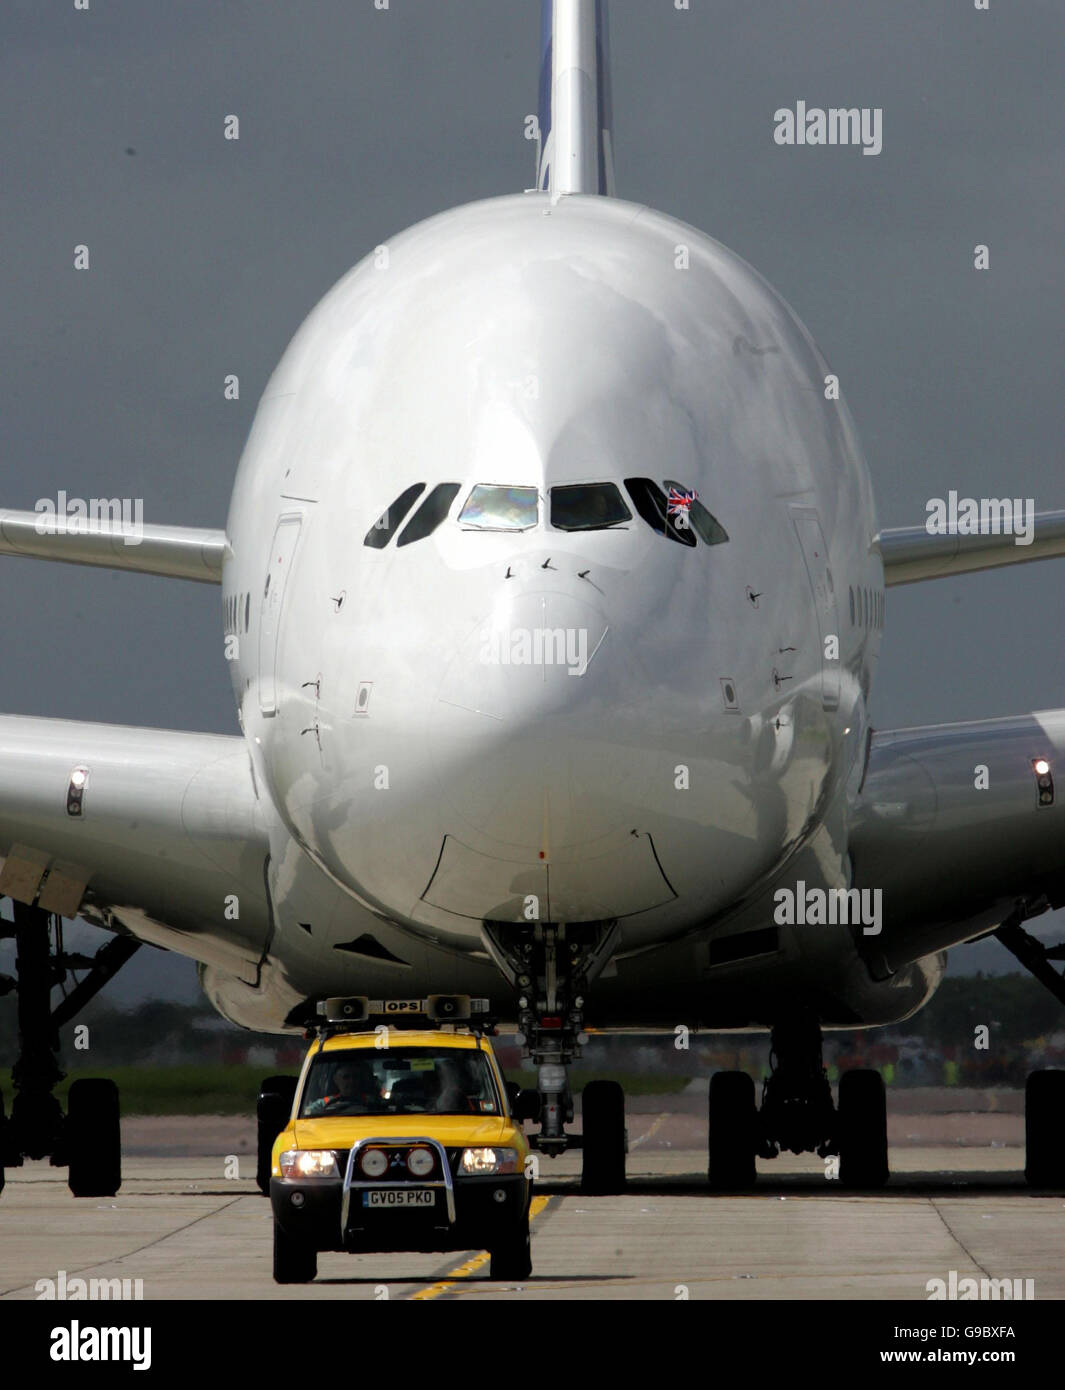 Le plus grand avion de ligne au monde, le géant Airbus A380 de 555 places, à l'aéroport de Londres Heathrow. Banque D'Images